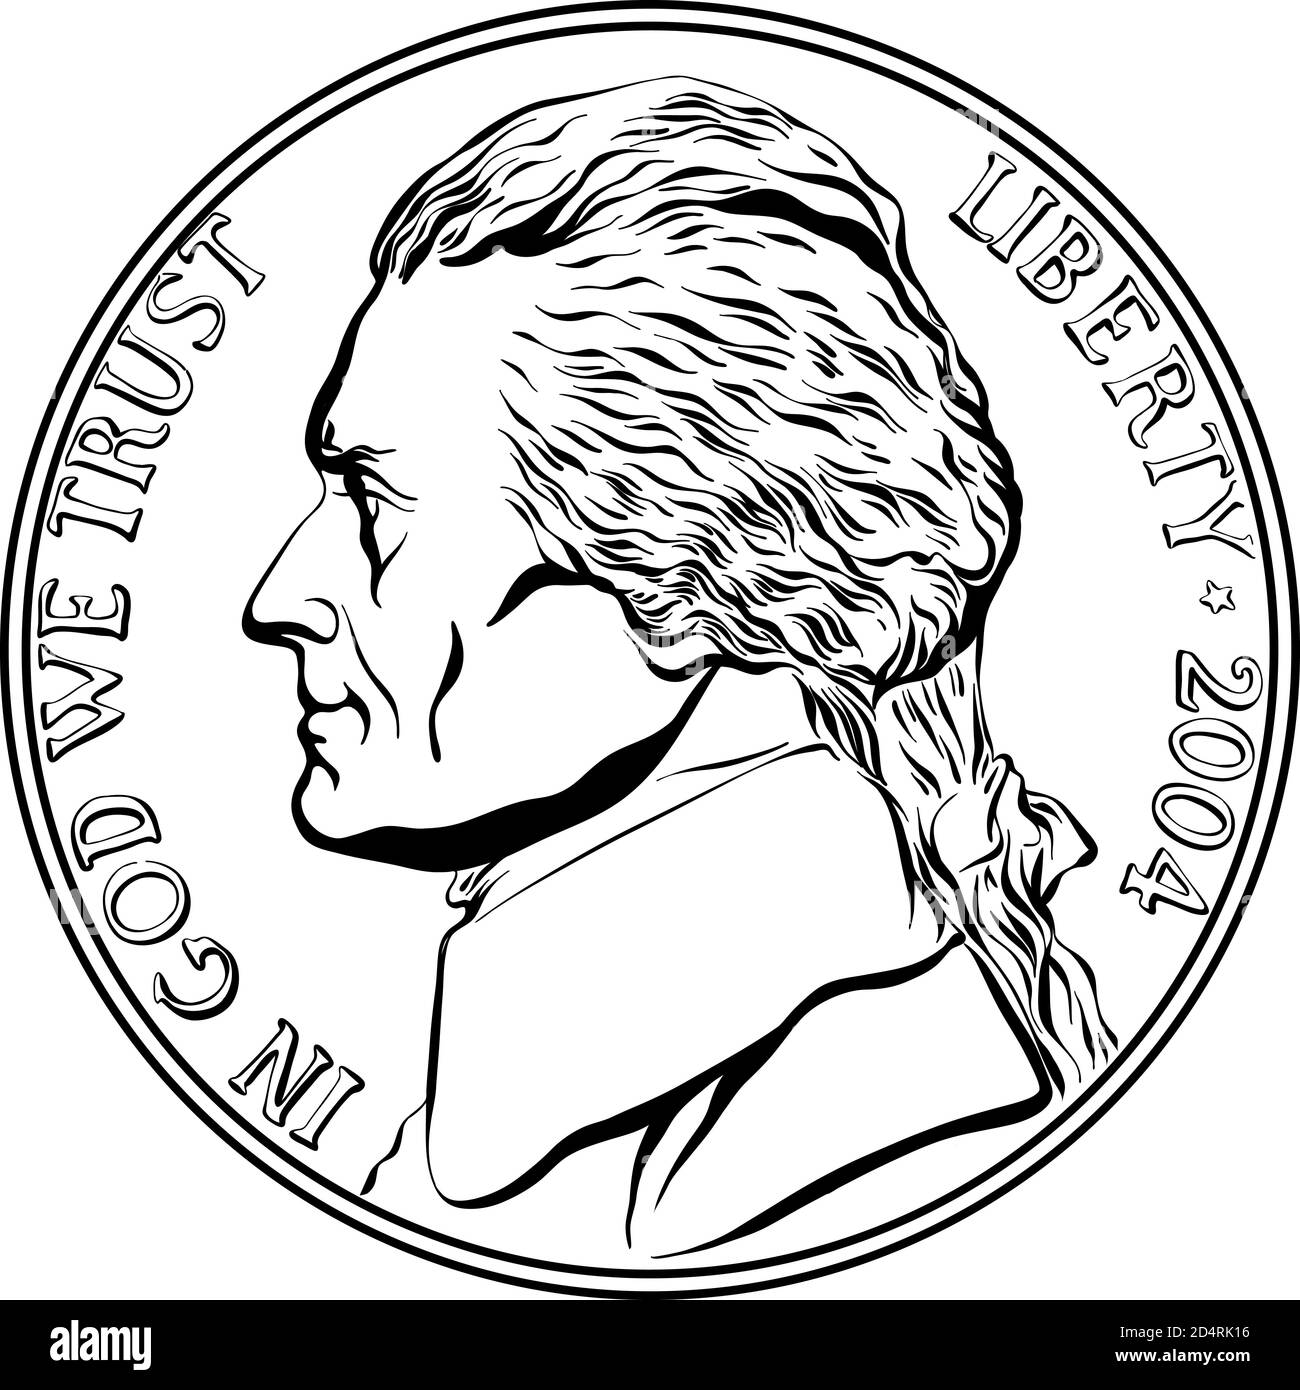 Jefferson nickel, American Money, États-Unis pièce de cinq cents avec Jefferson, troisième président des États-Unis sur l'inverse. Image en noir et blanc Illustration de Vecteur